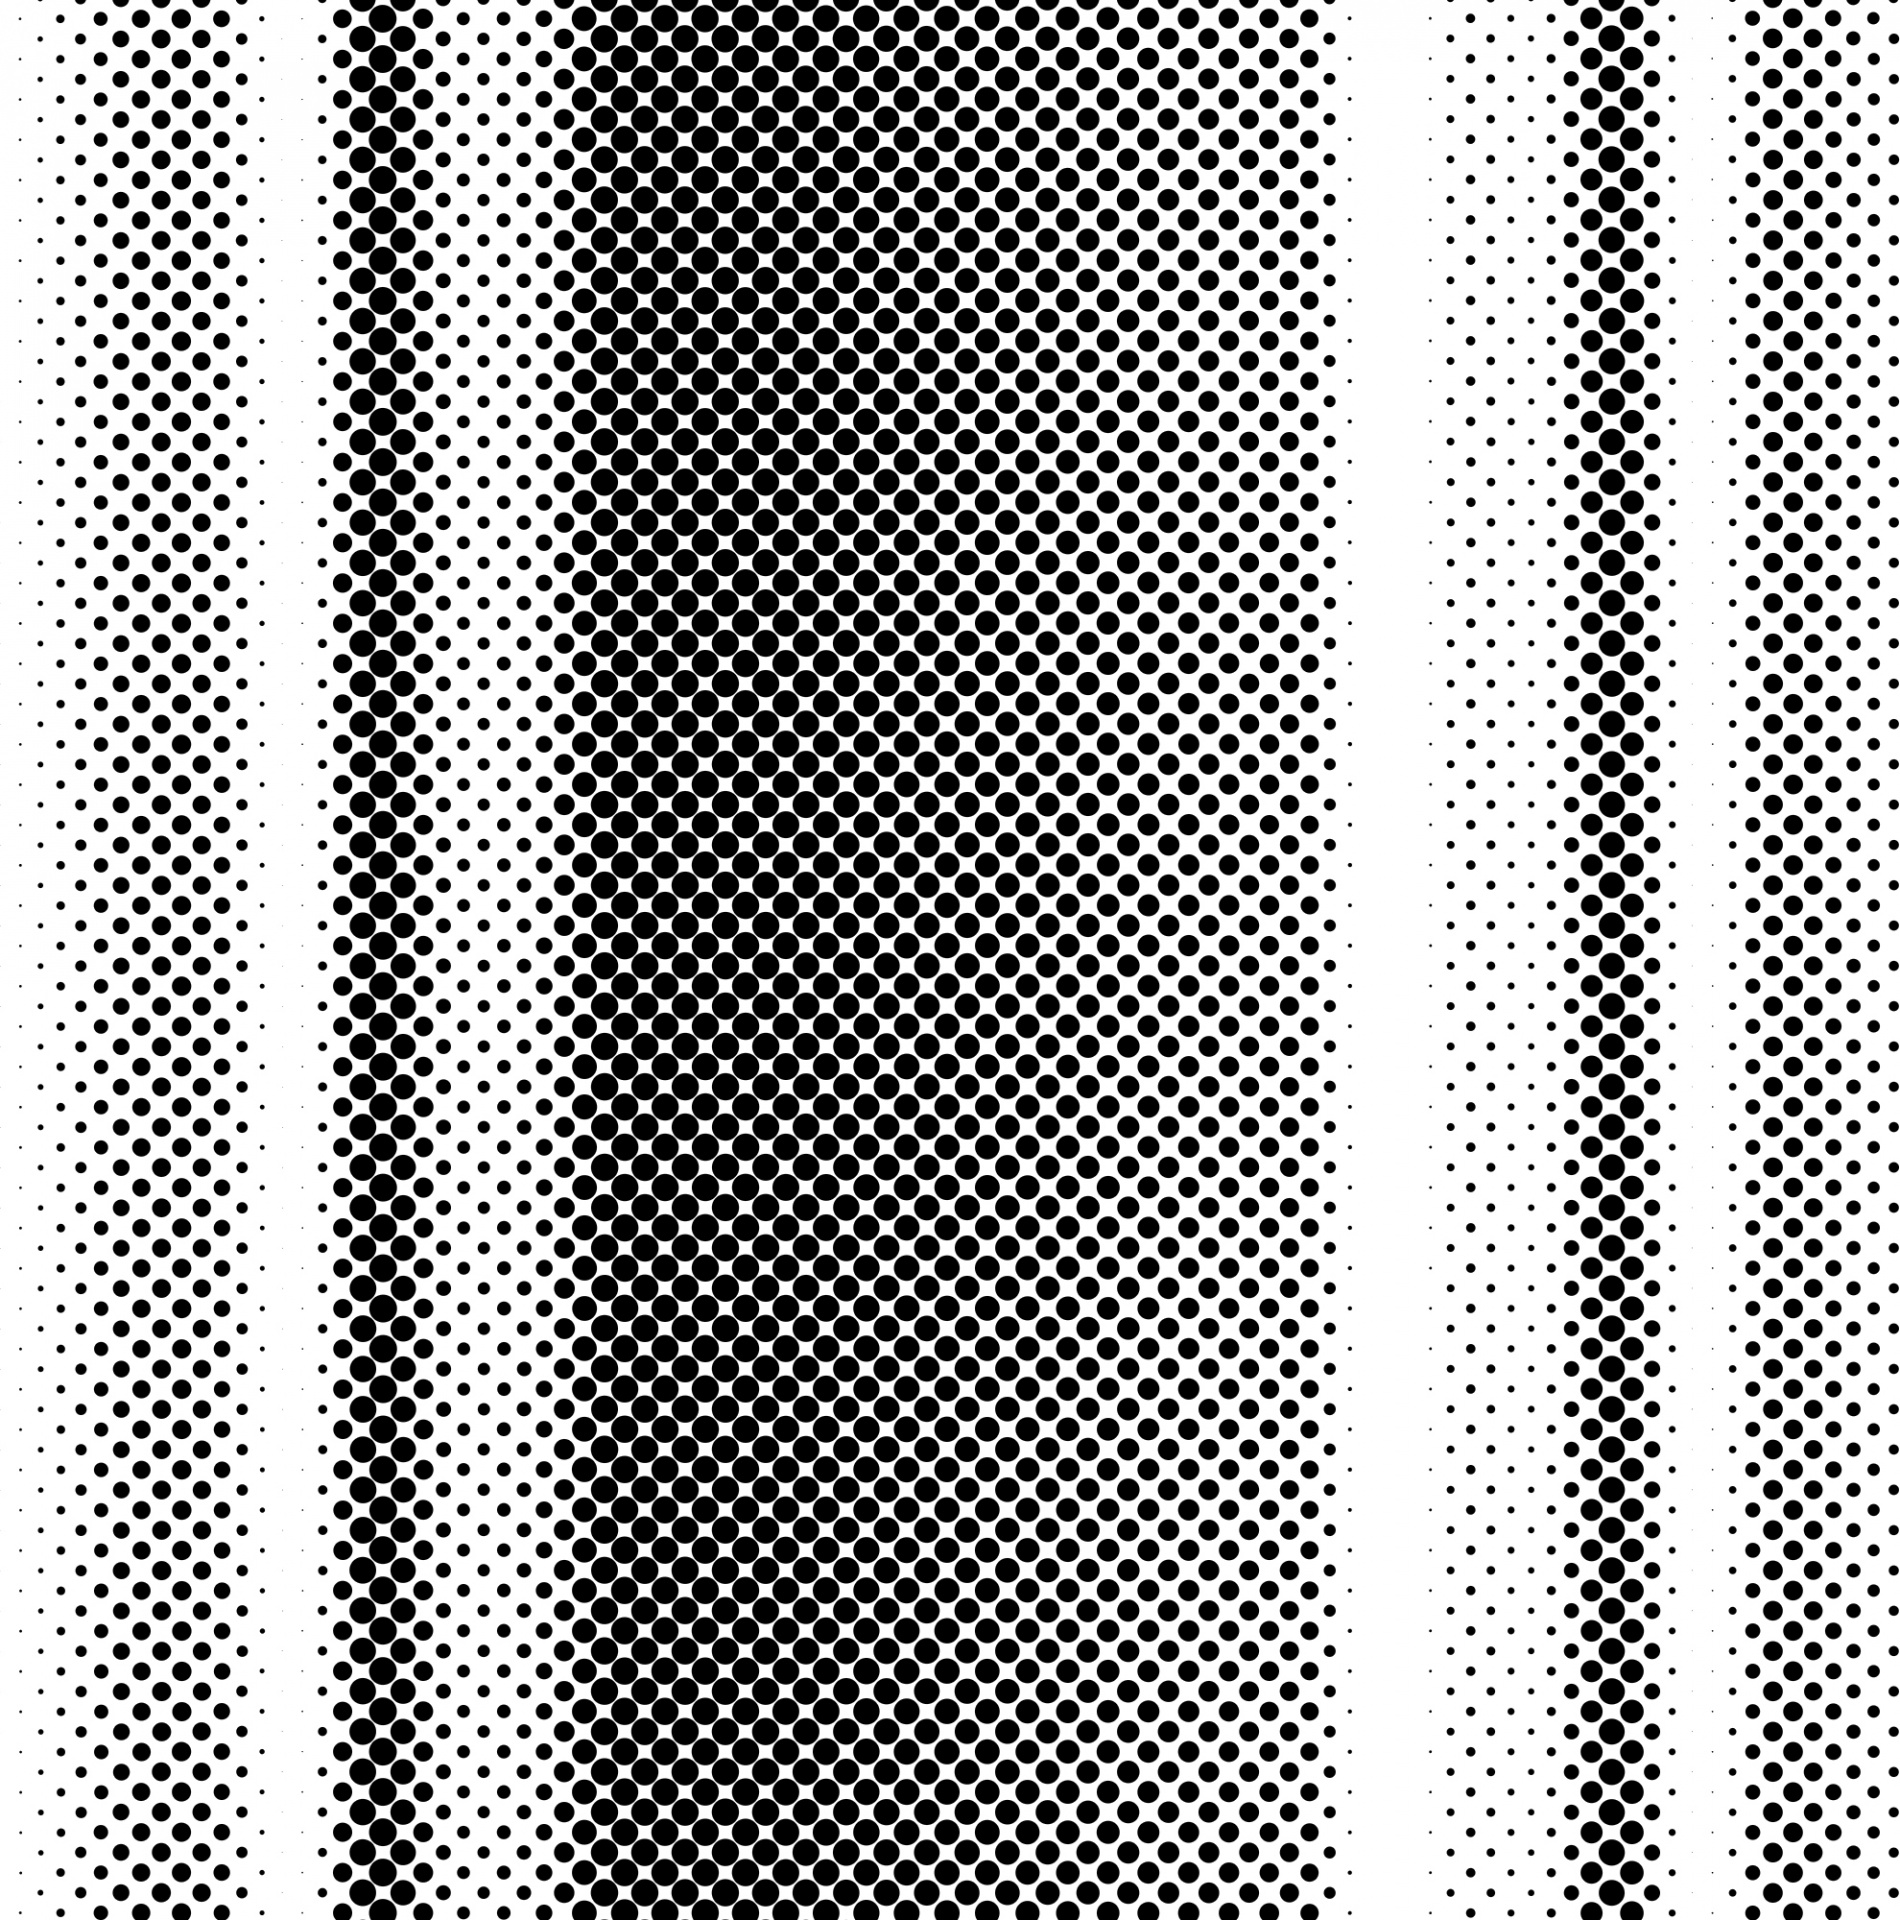 halftone pattern dots free photo